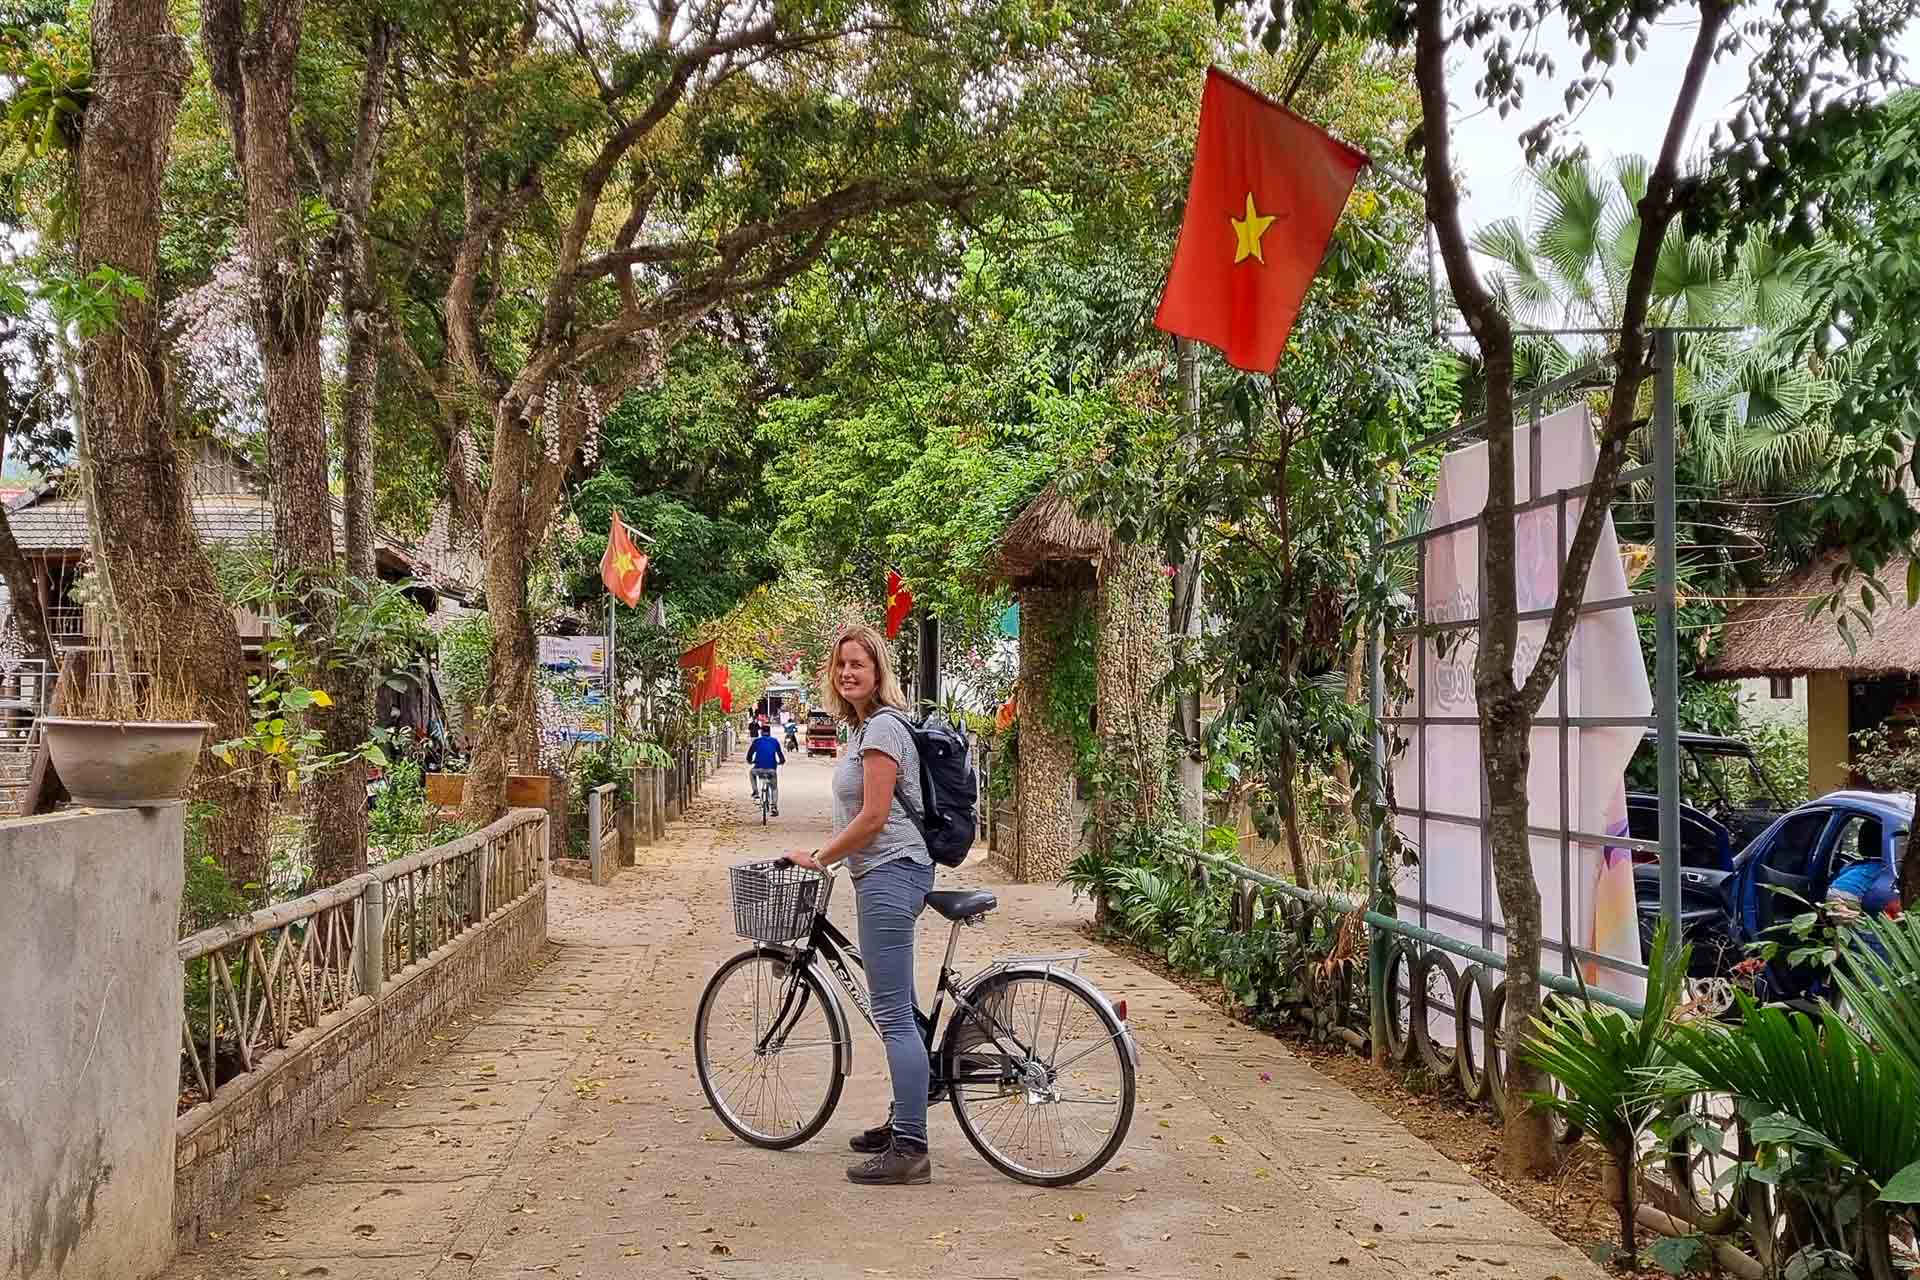 vrouw op fiets in een straat in Vietnam met Vietnamese vlag